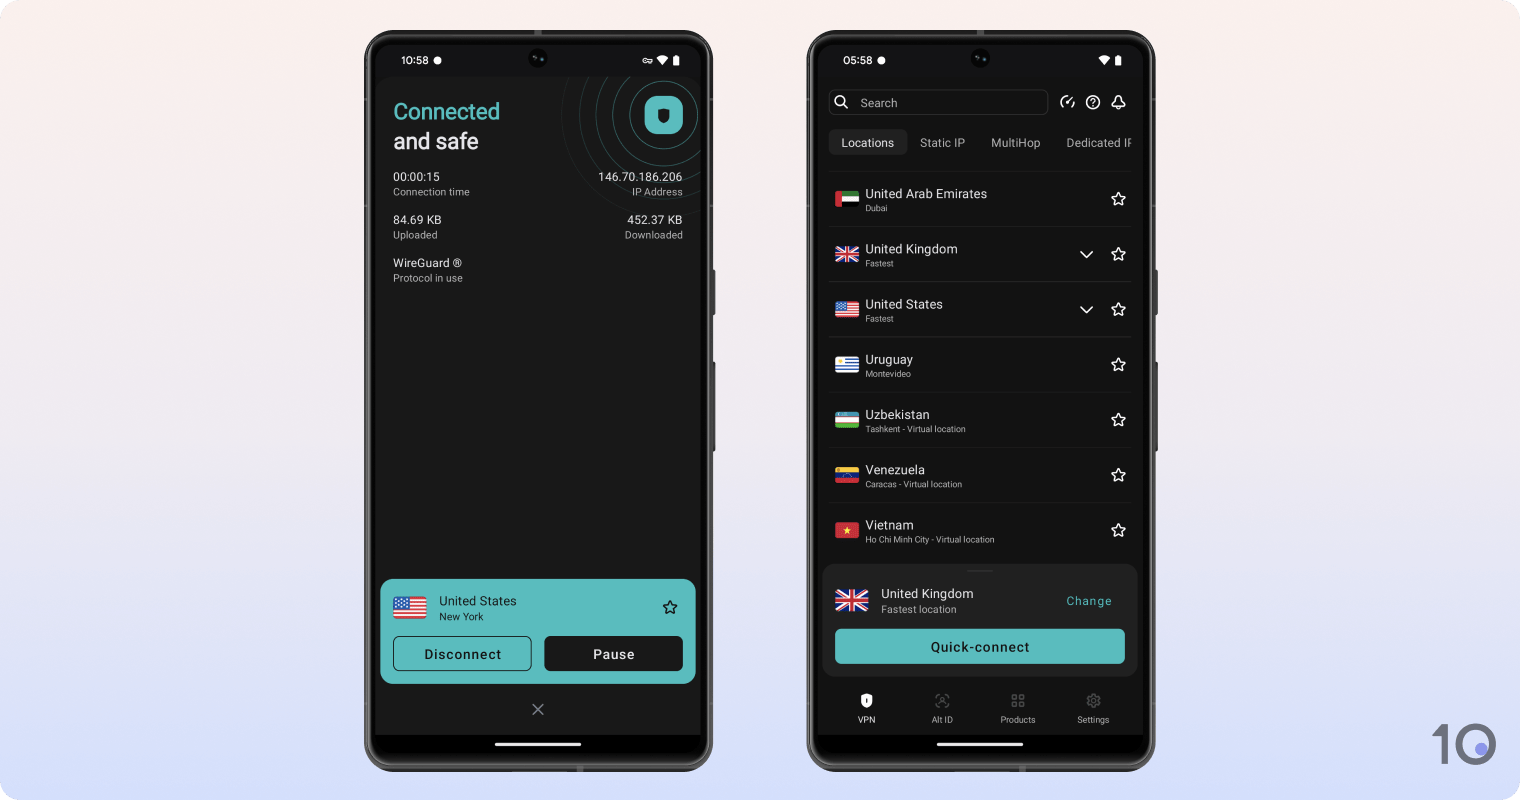 Surfshark's VPN app for Android